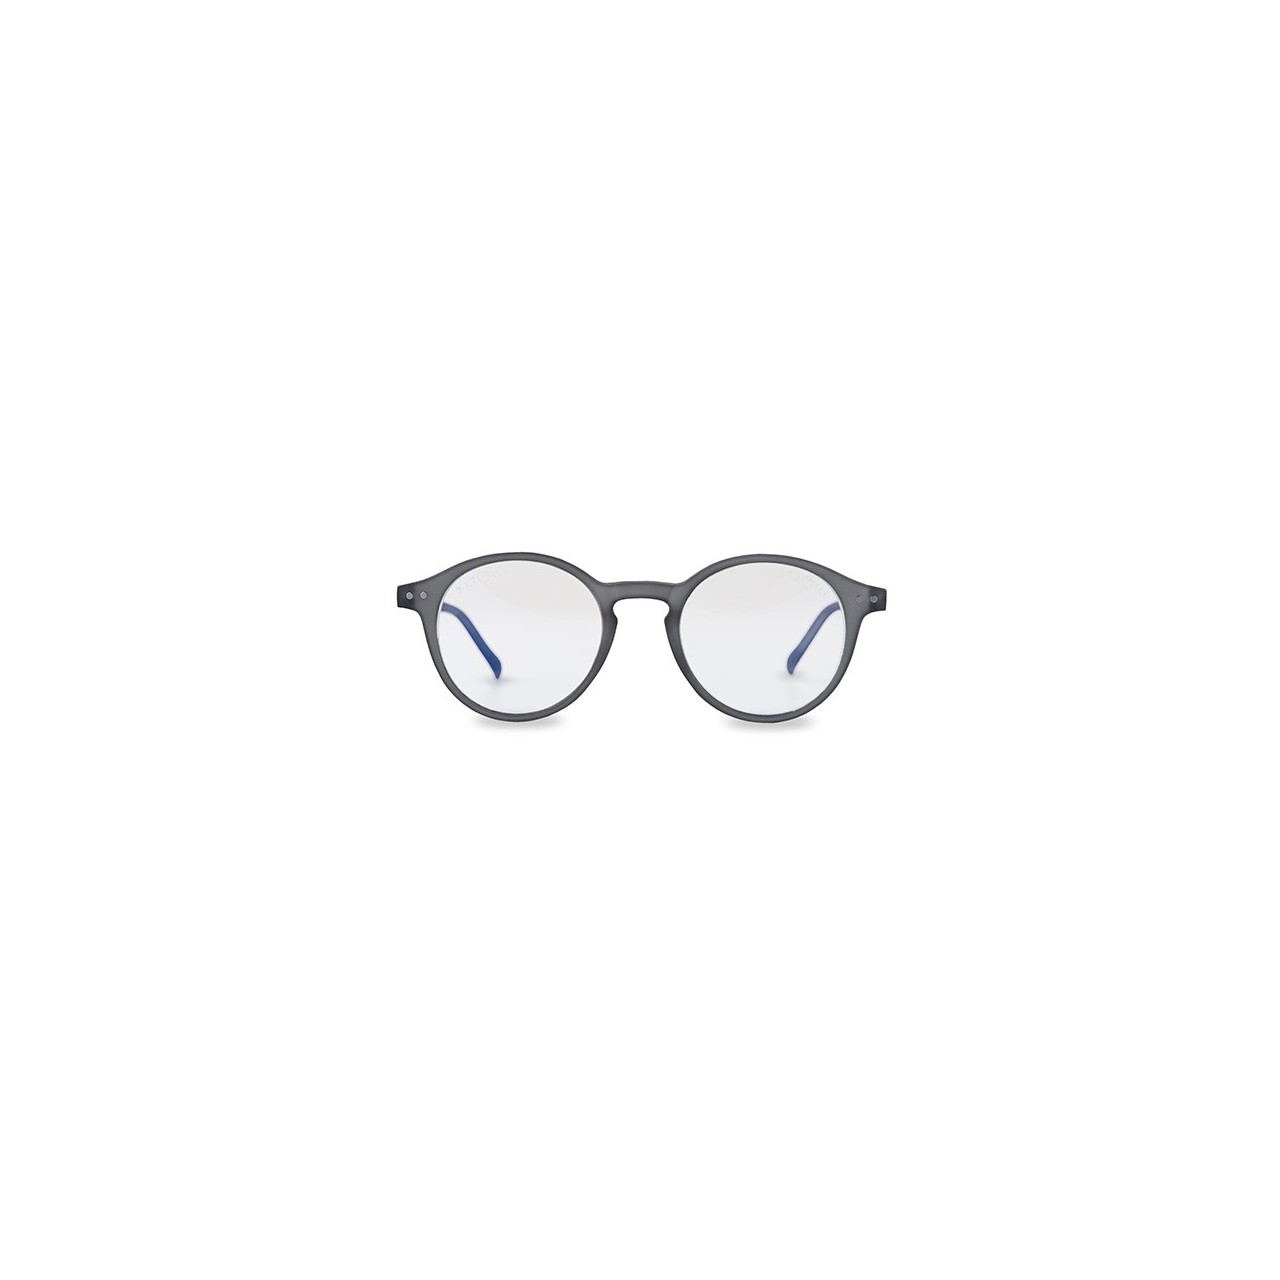 Gafas de seguridad bluestop gris A01